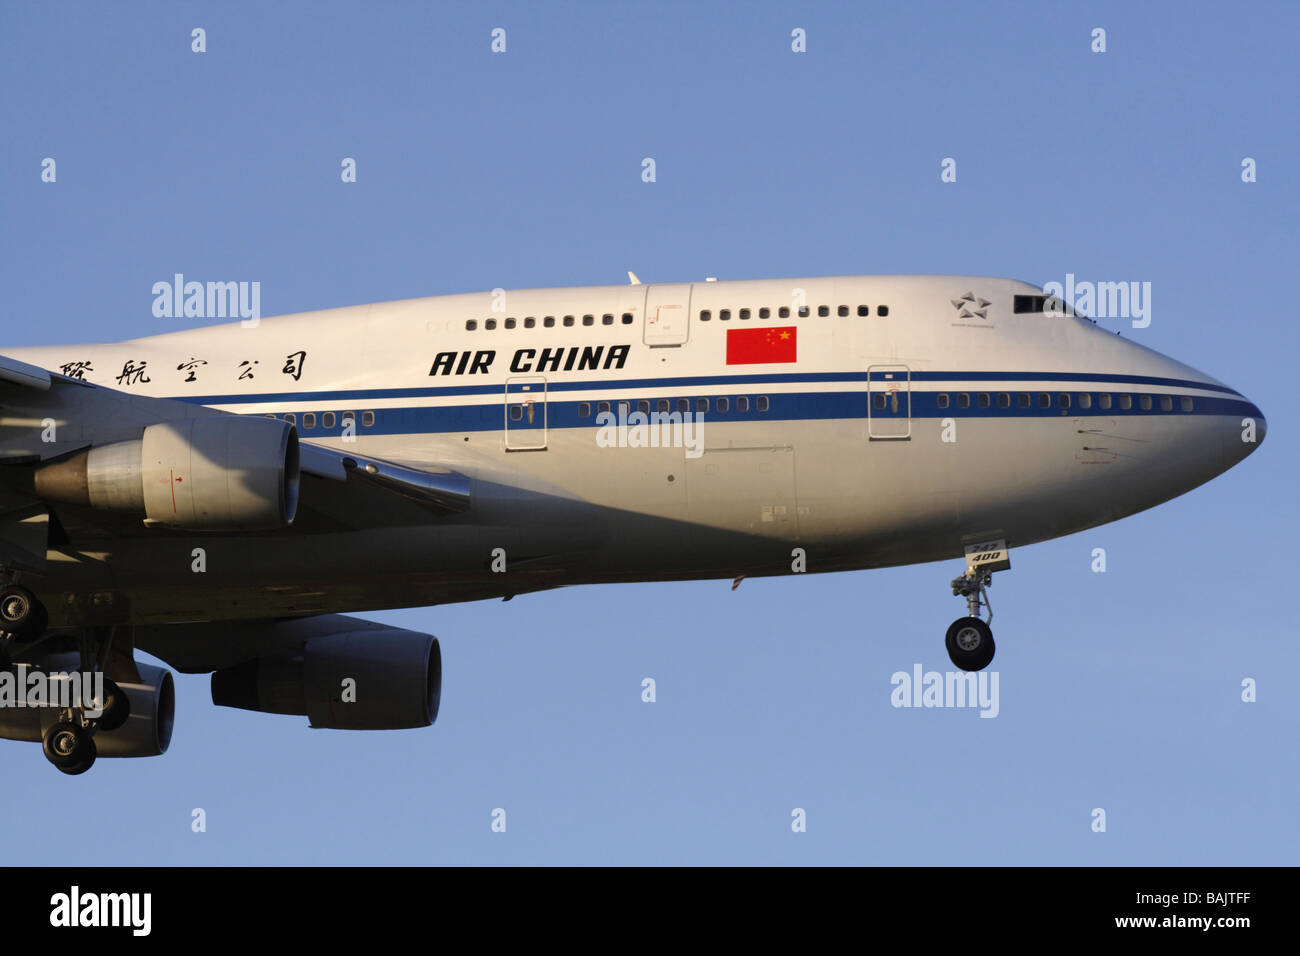 Air China Boeing 747-400 jumbo jet avion arrivant à l'aube. Vue en gros plan. Banque D'Images